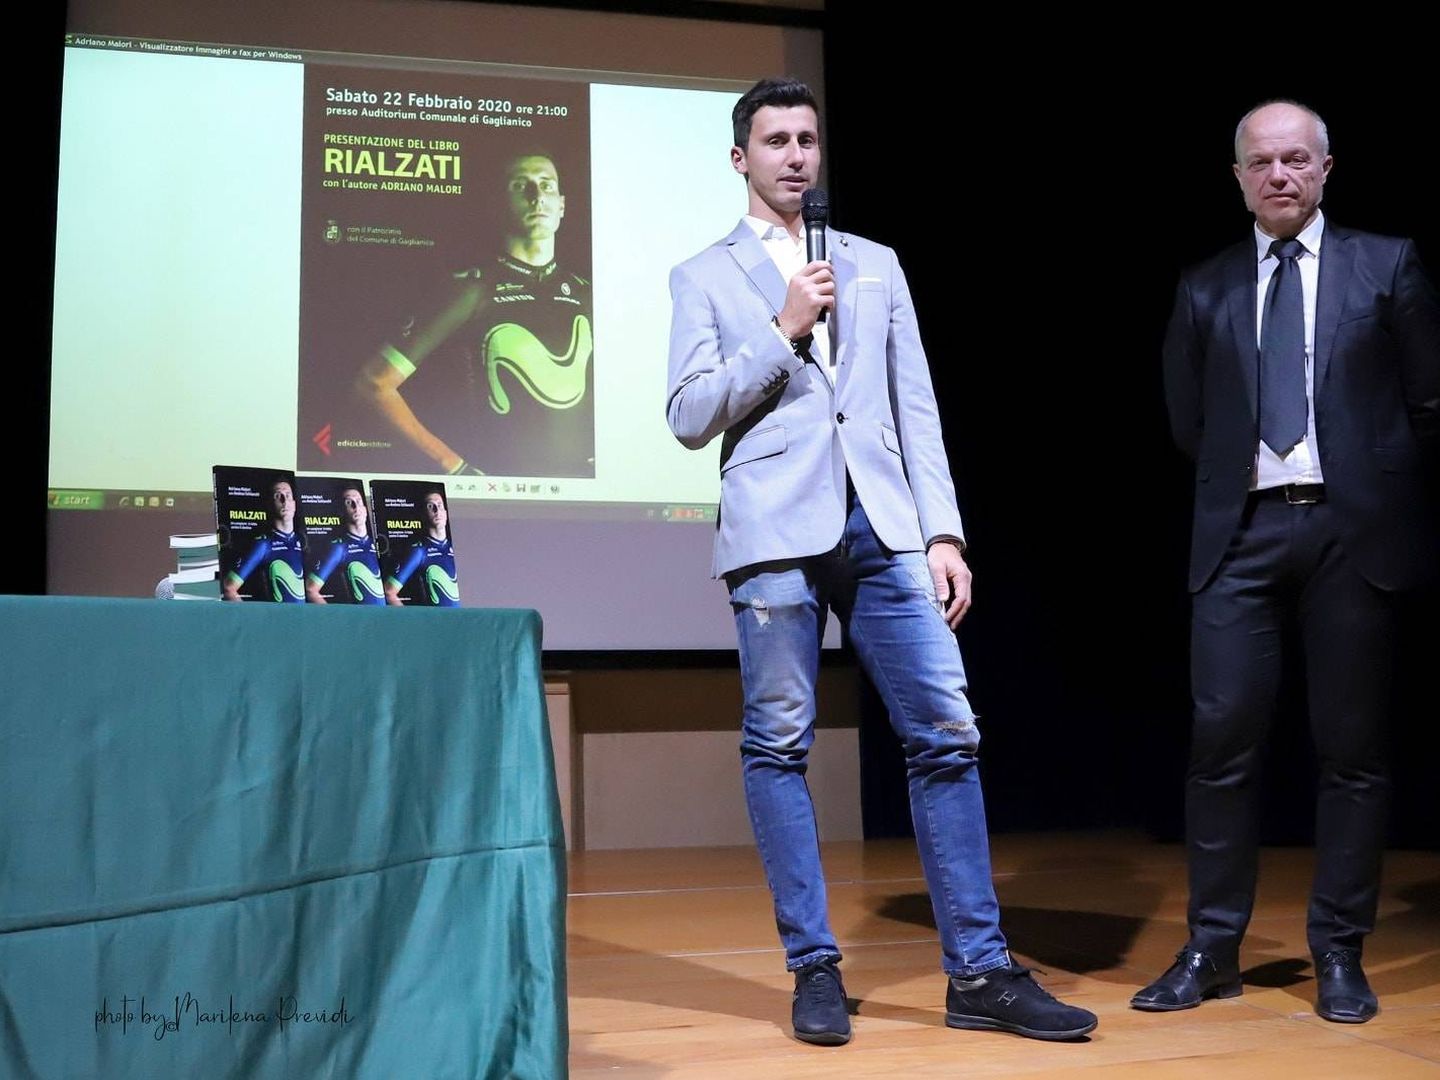 Adriano Malori, durante uno de los actos de presentación de su libro en Italia. (Marilena Previdi)